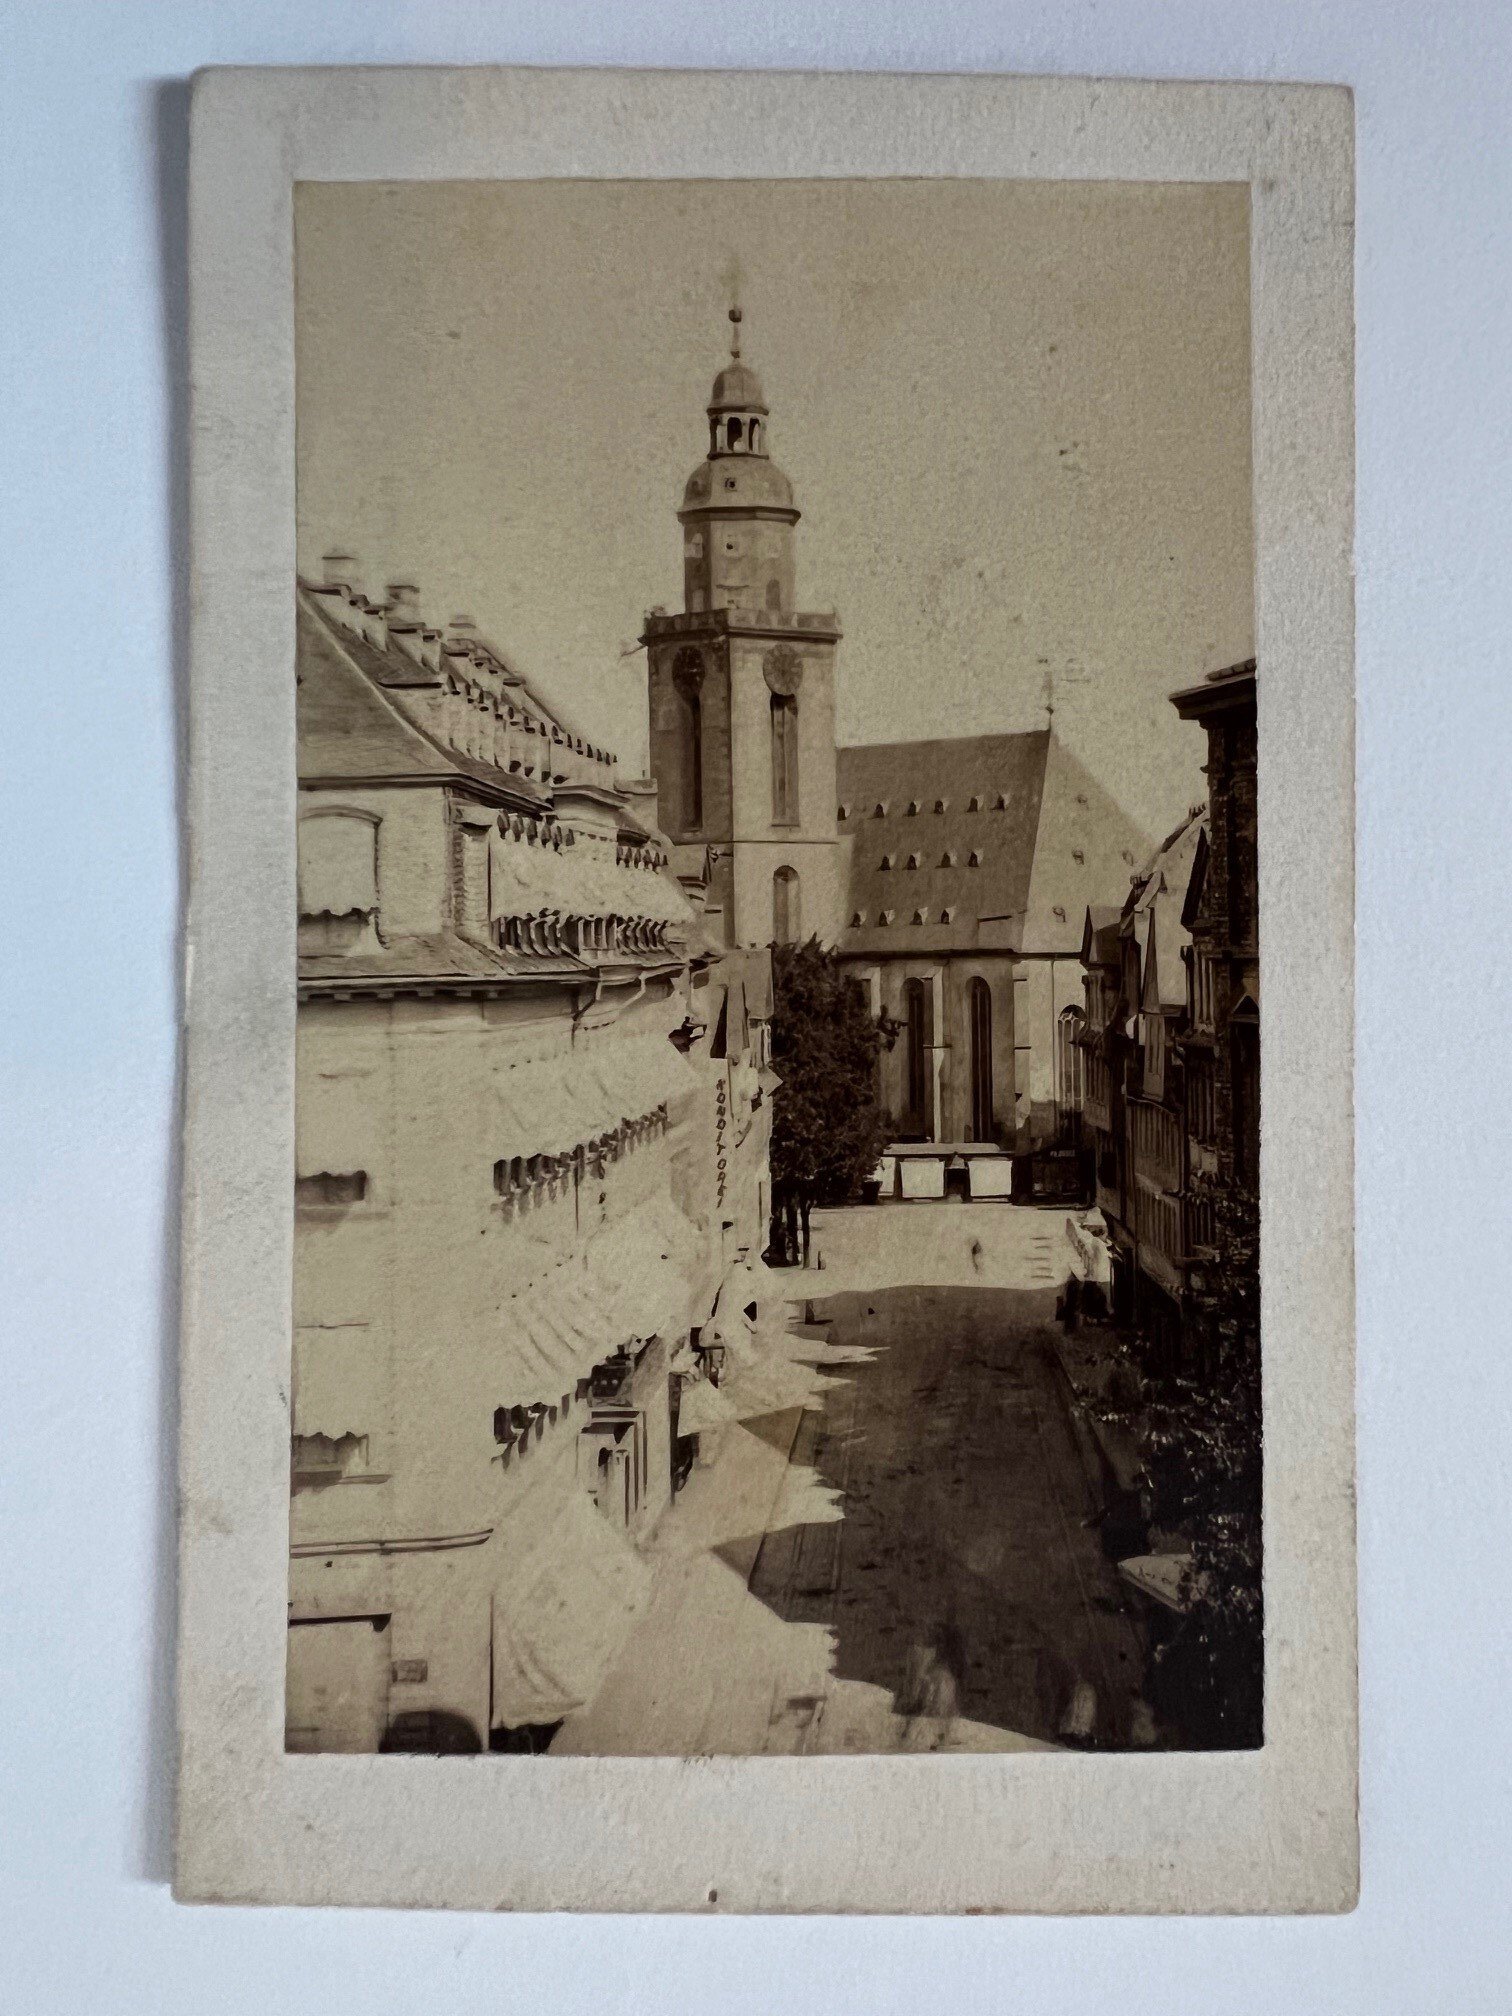 CdV, Unbekannter Fotograf, Frankfurt, Katharinenkirche, ca. 1865. (Taunus-Rhein-Main - Regionalgeschichtliche Sammlung Dr. Stefan Naas CC BY-NC-SA)